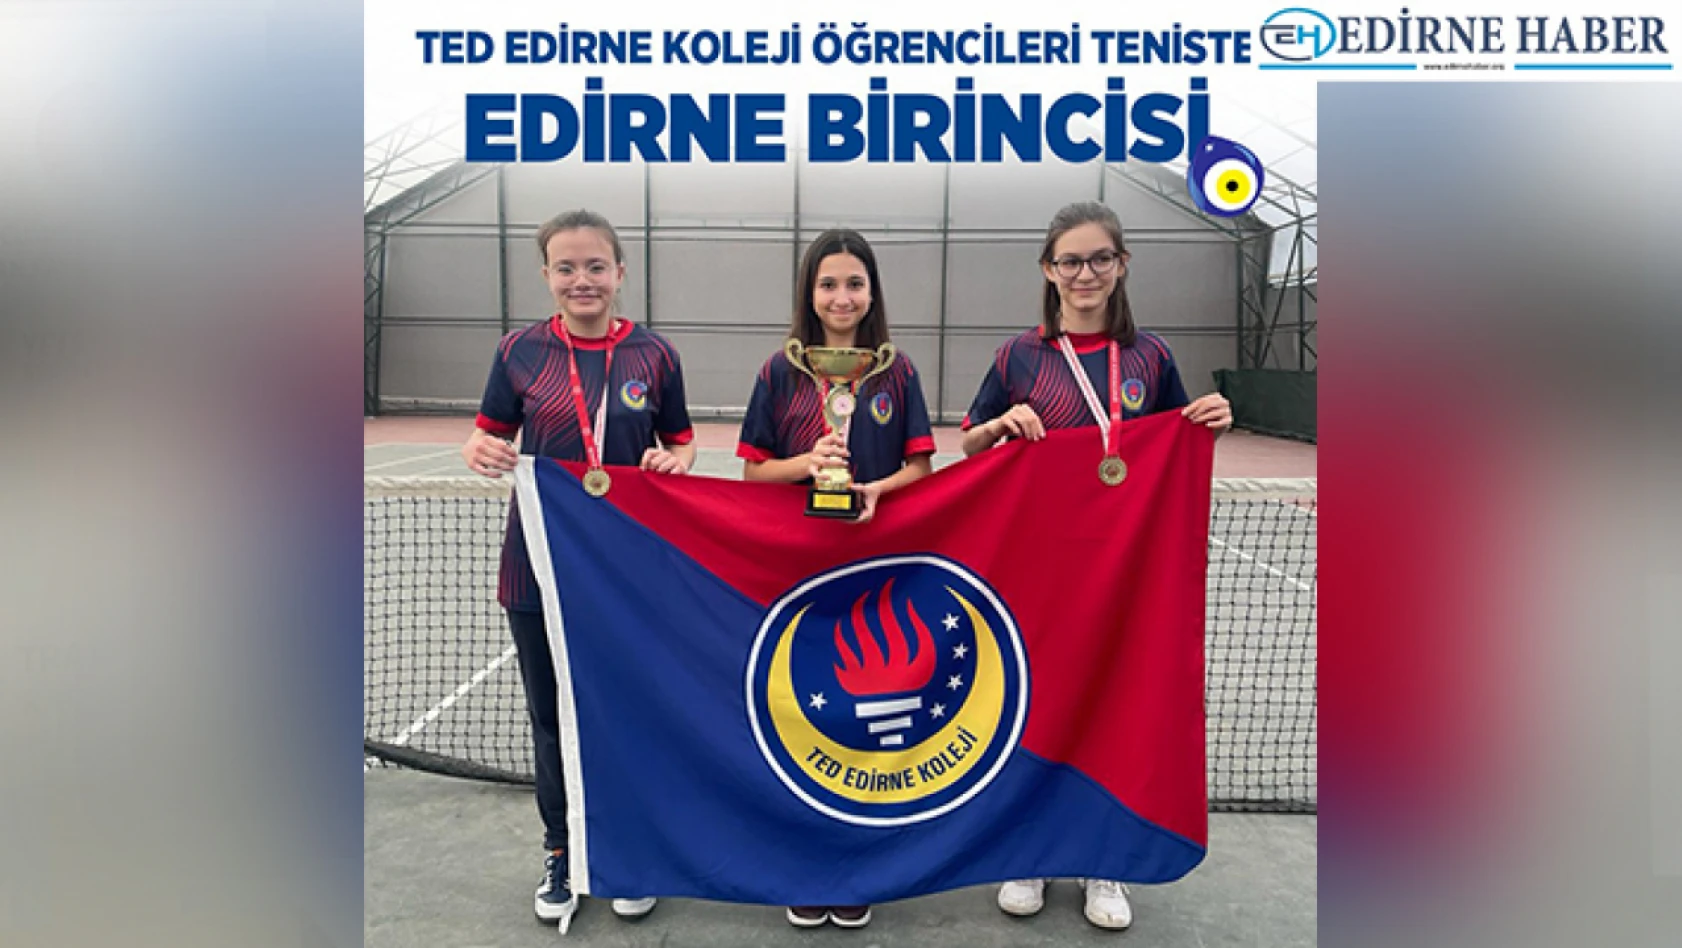 TED Edirne Koleji öğrencilerinden teniste başarı